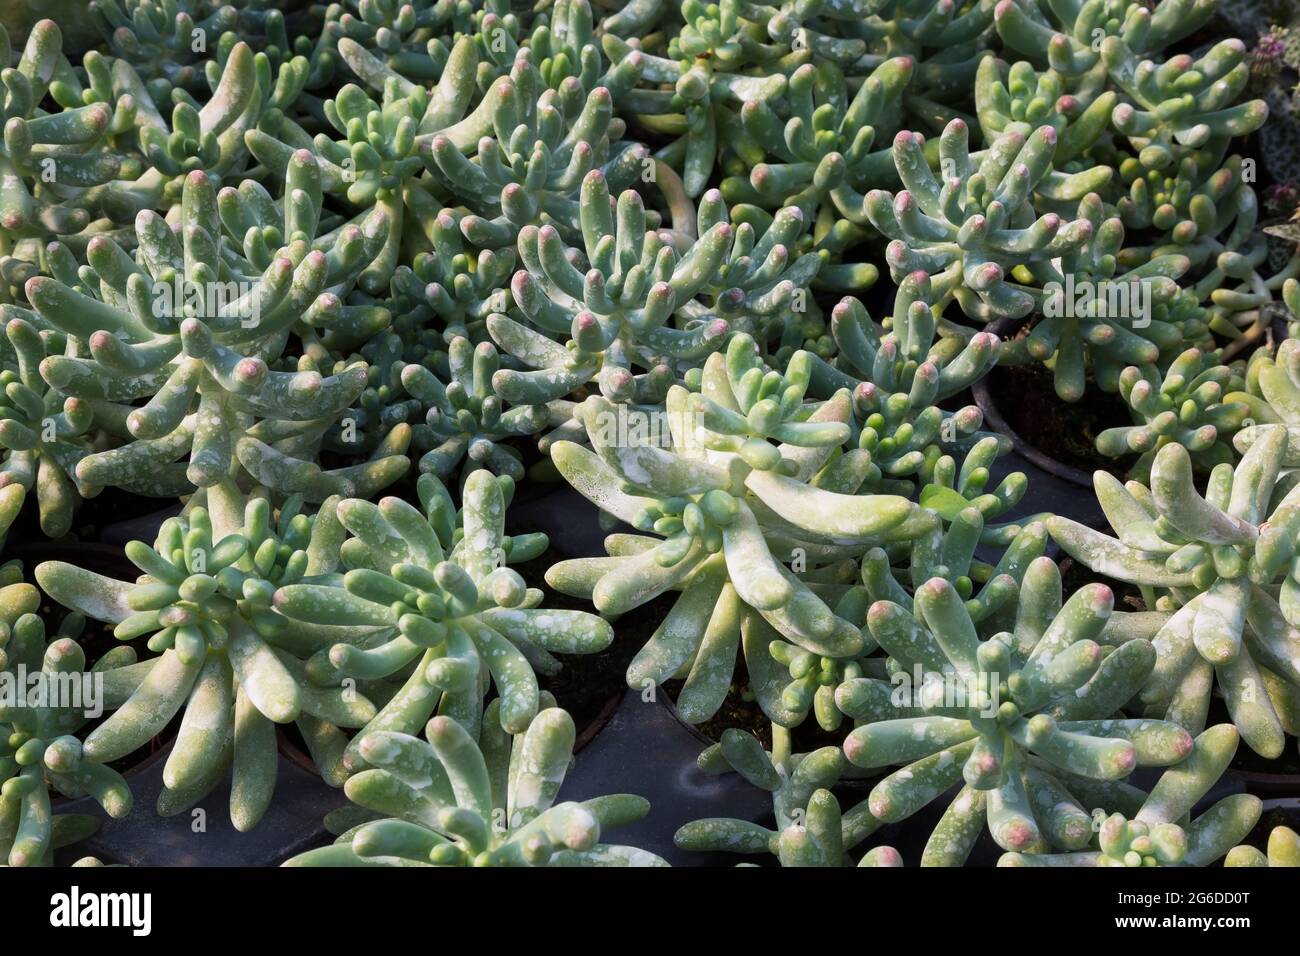 Echeveria - plantes succulentes avec des taches d'eau dures qui poussent dans des récipients à l'intérieur d'une serre Banque D'Images